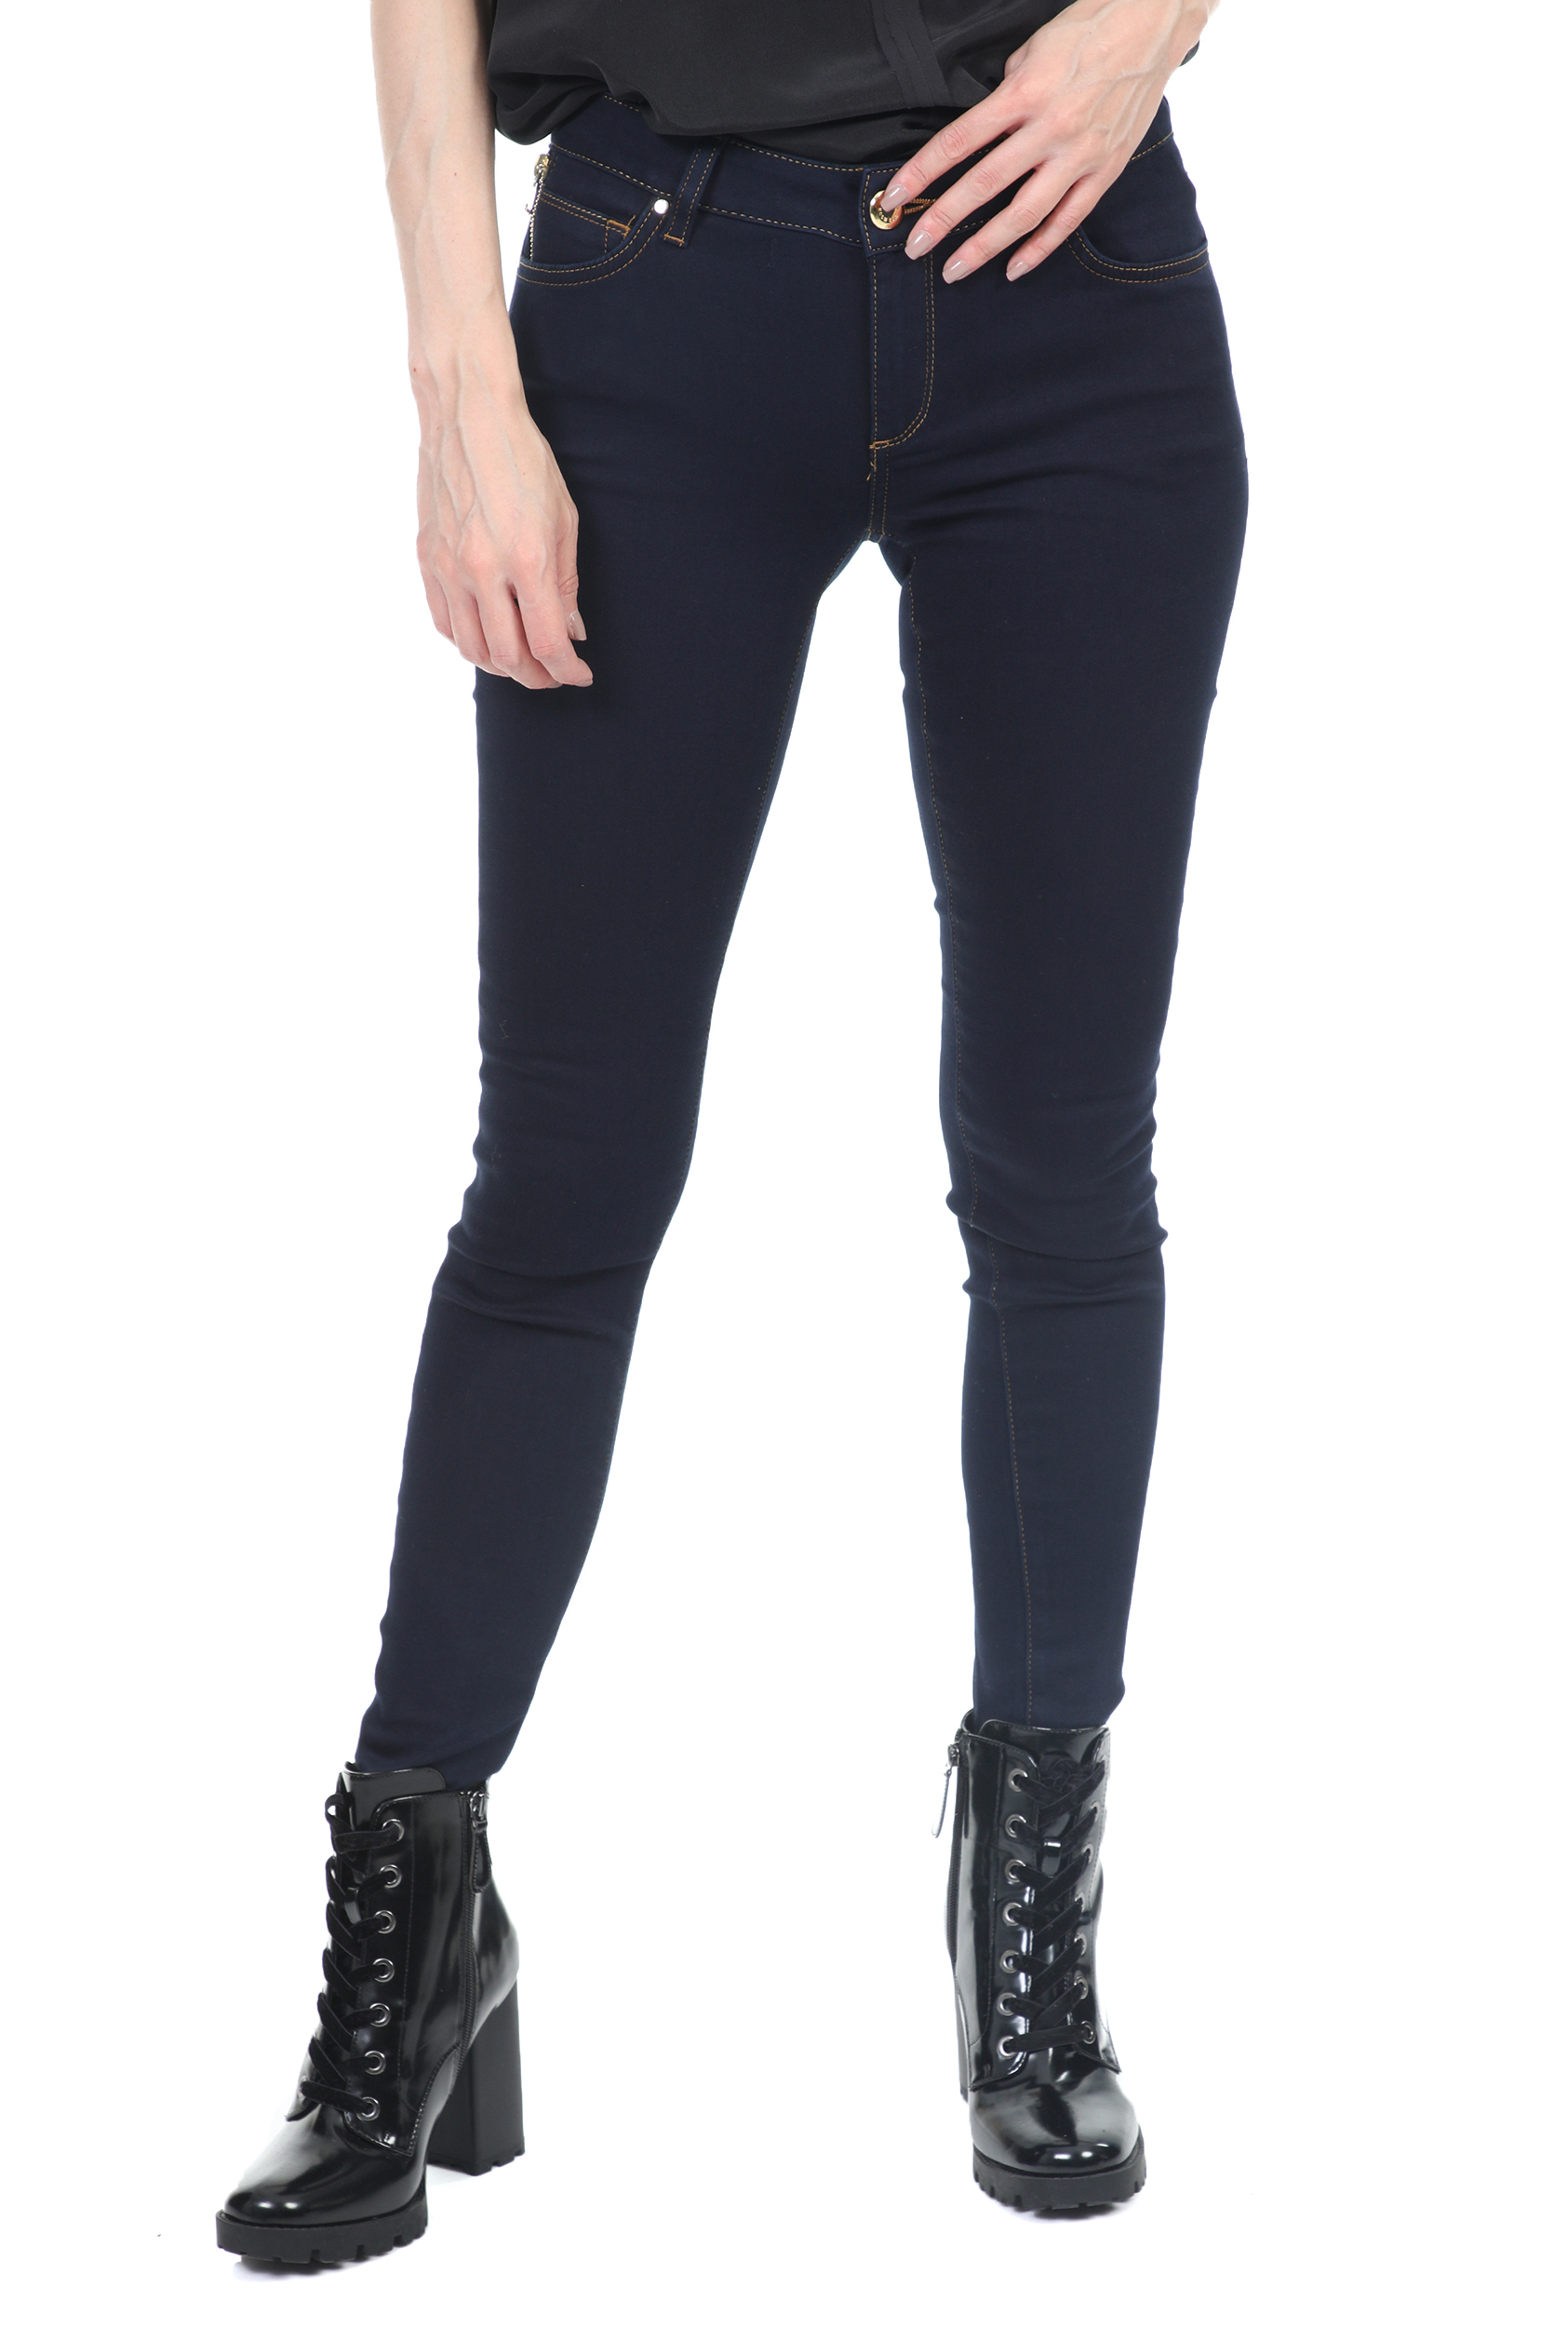 Γυναικεία/Ρούχα/Παντελόνια/Jean MOS MOSH - Γυναικείο παντελόνι τζιν MOS MOSH Victoria 7/8 Silk Touch Jeans μπλέ